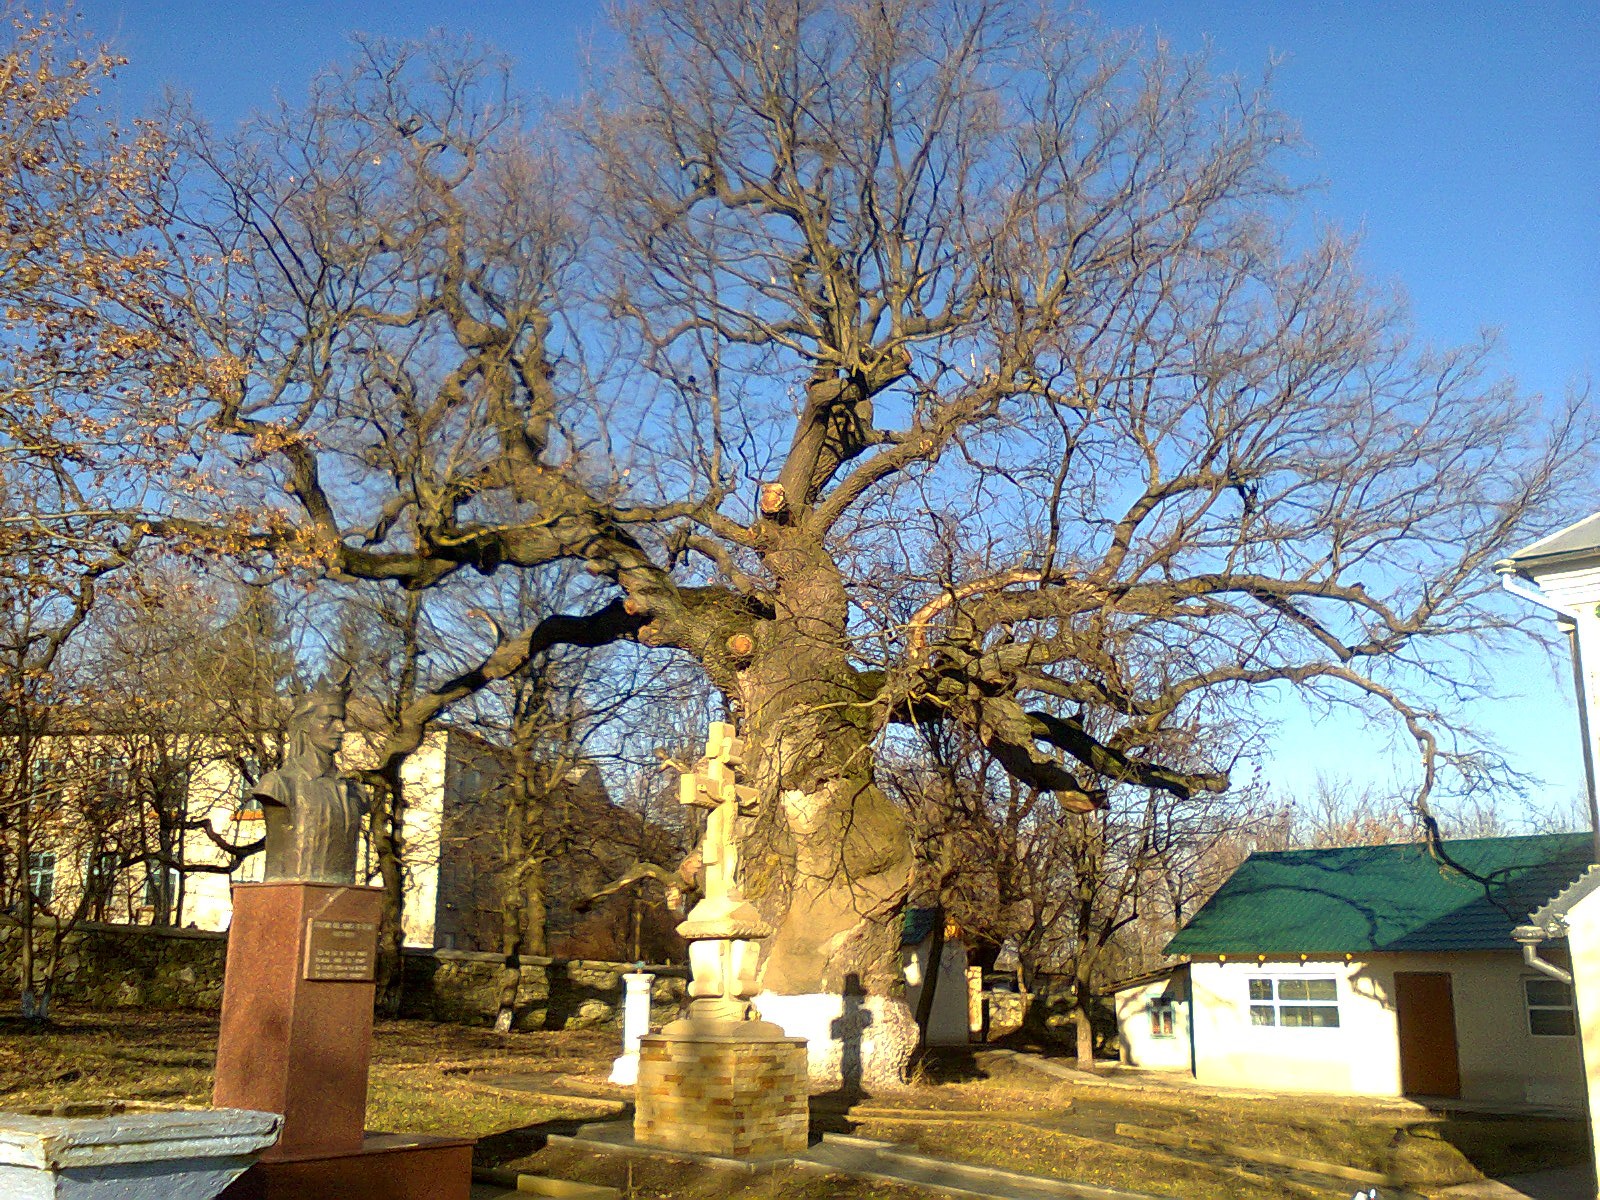 Stejarul lui Ștefan cel Mare, care are peste 700 de ani, riscă să se prăbușească. Experții încearcă să salveze arborele secular